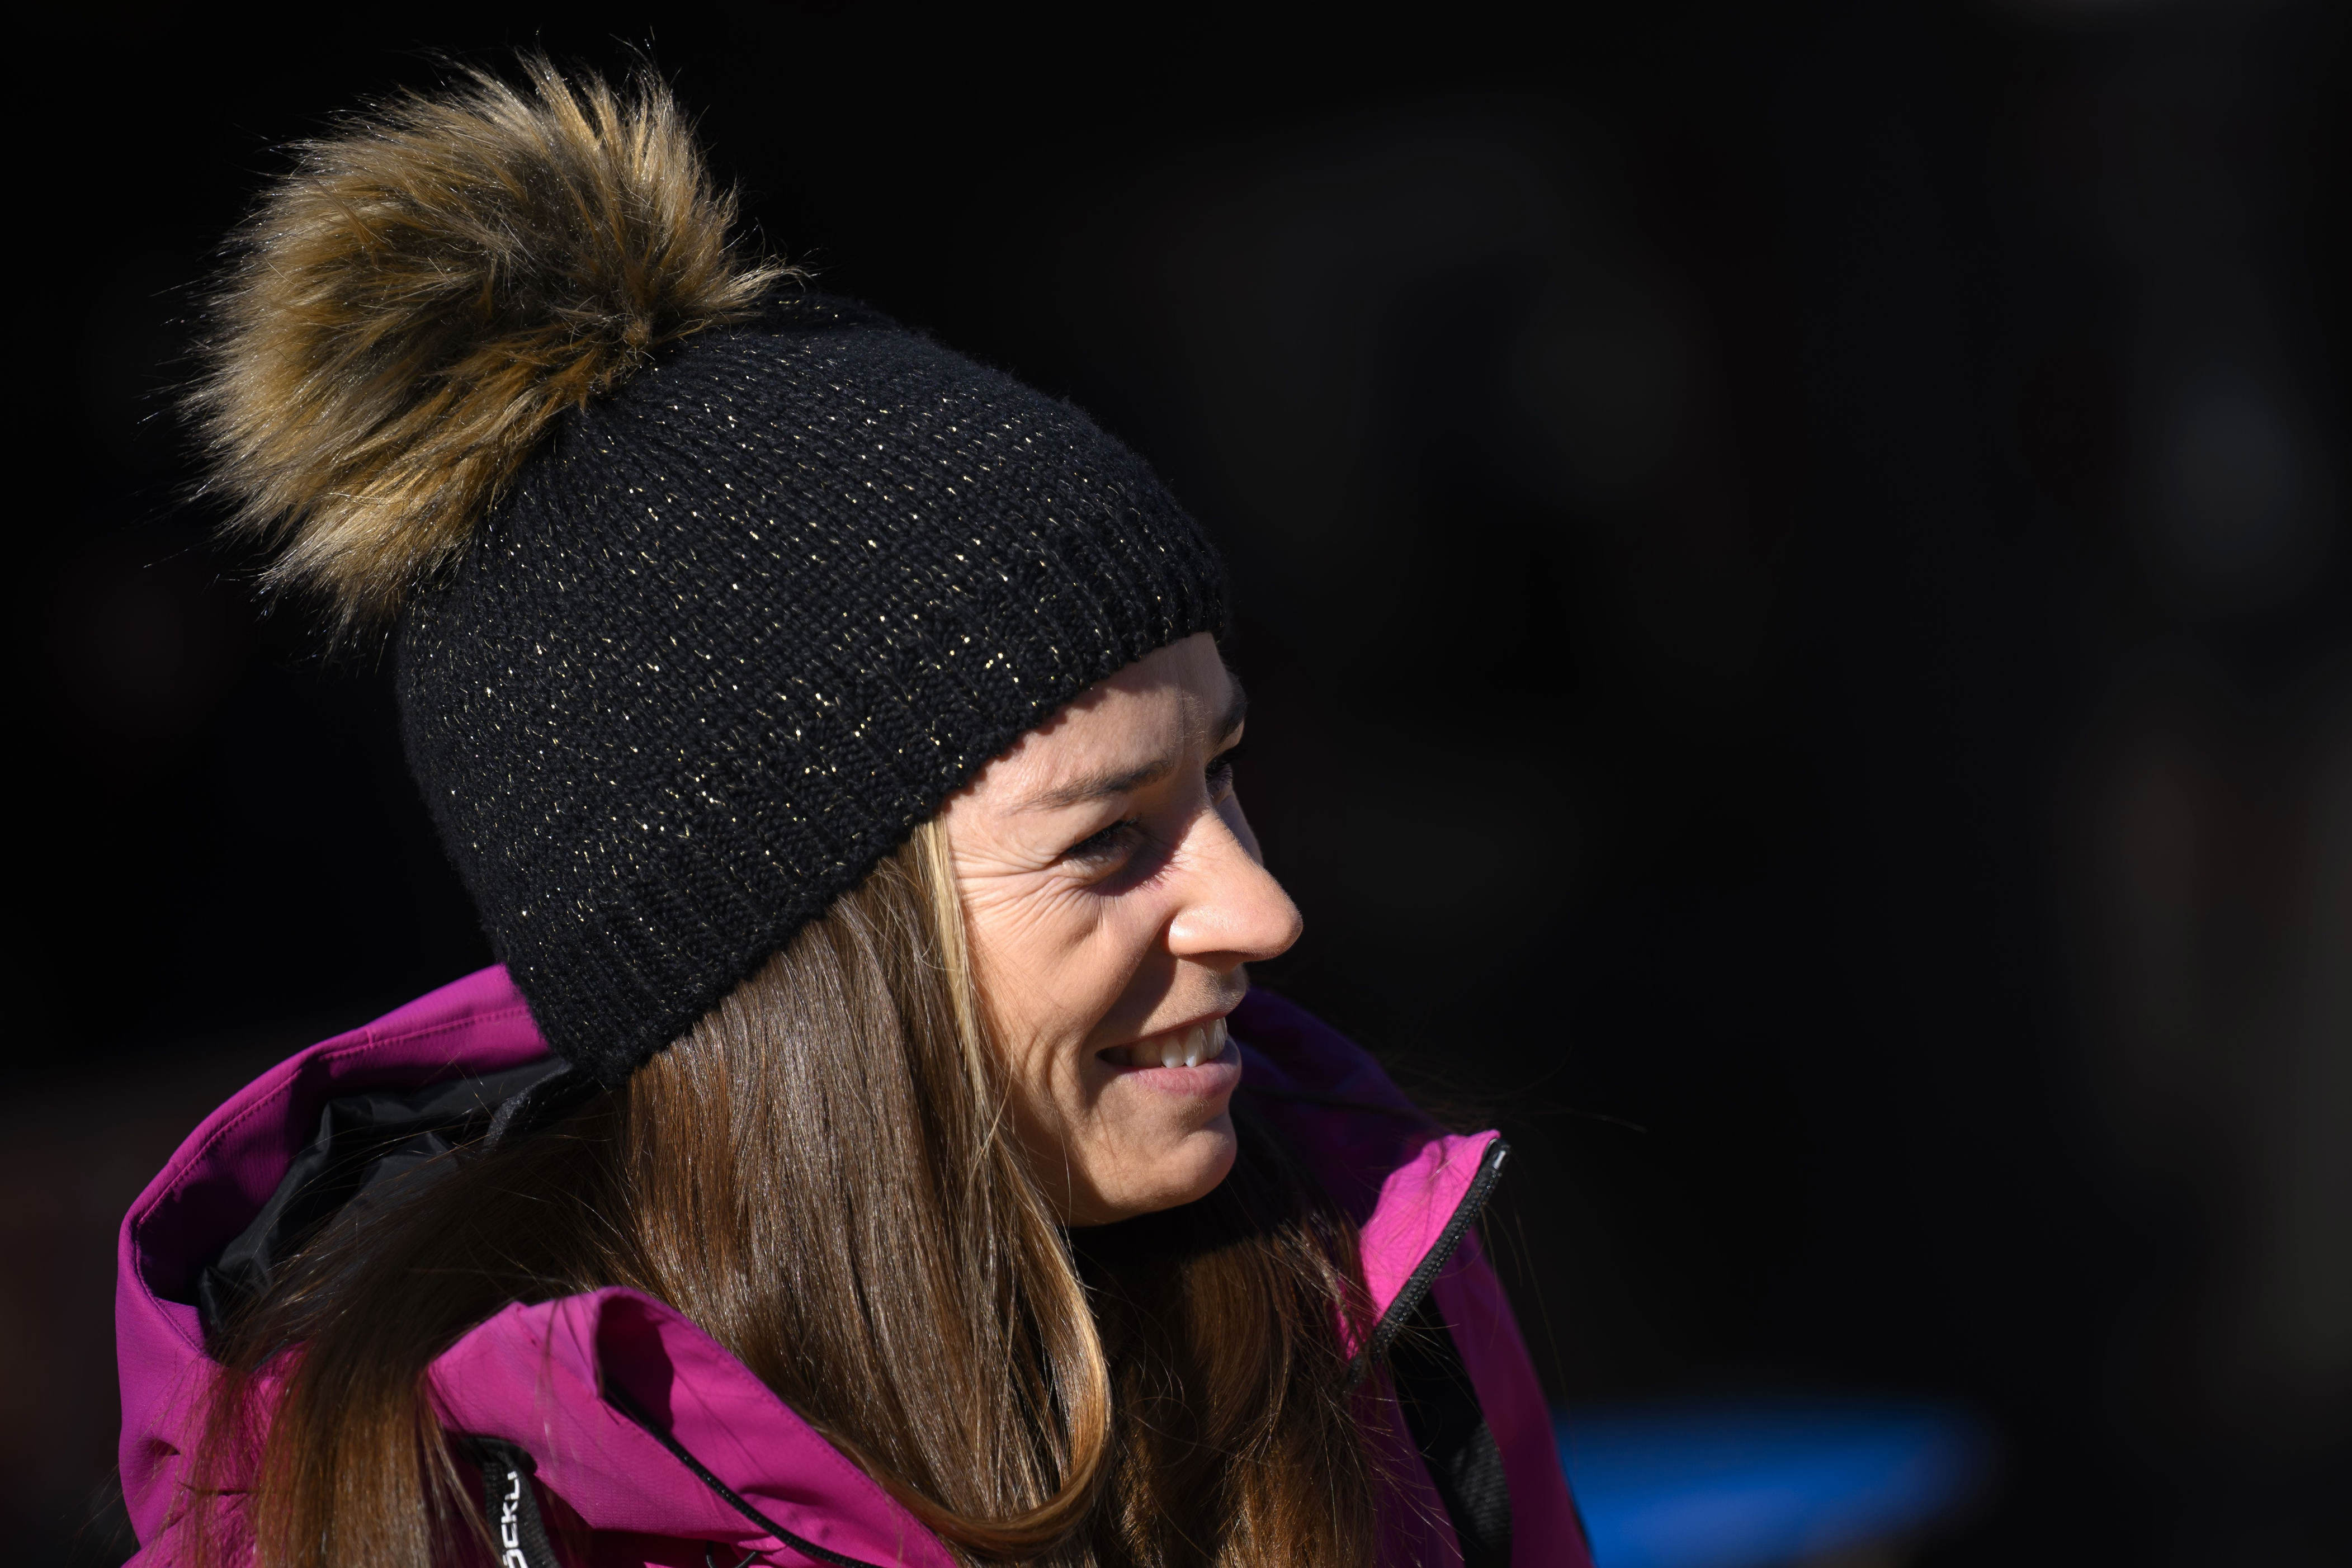 interview - «sport ist grausam und aggressiv», sagt tina maze, die ehemalige dominatorin des ski-weltcups